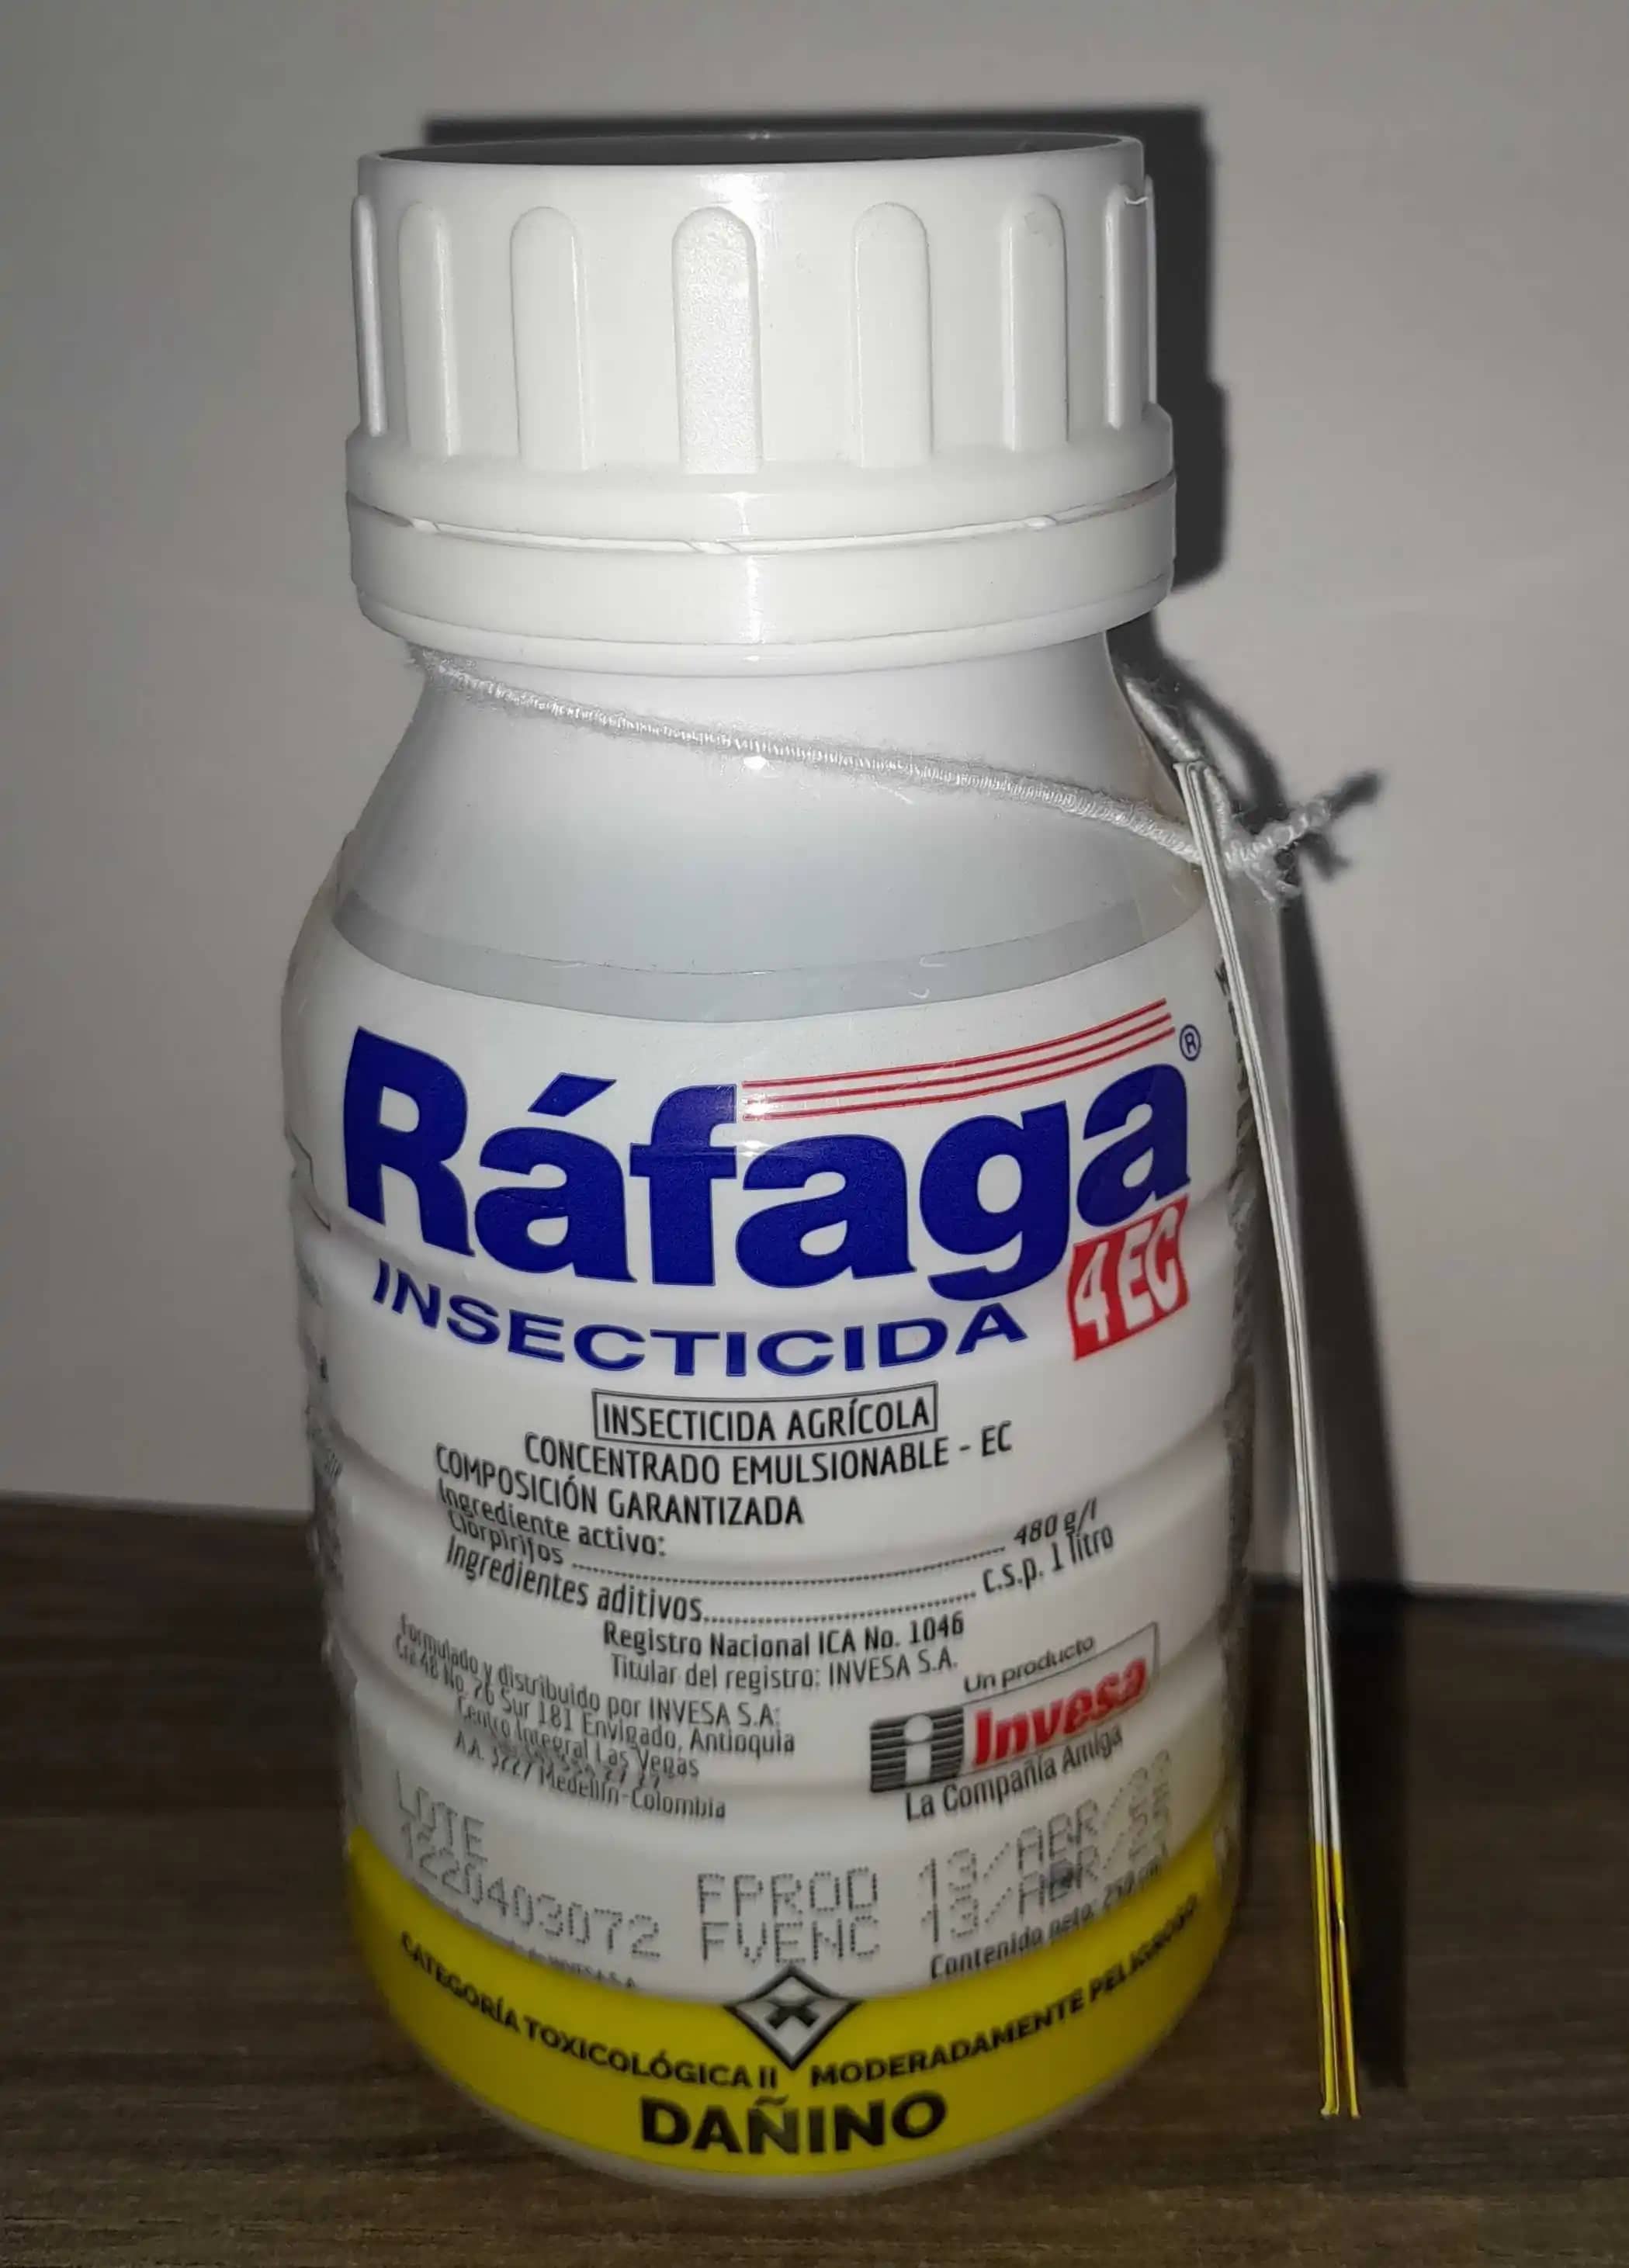 Rafaga 4 EC Insecticida organofosforado, control de insectos